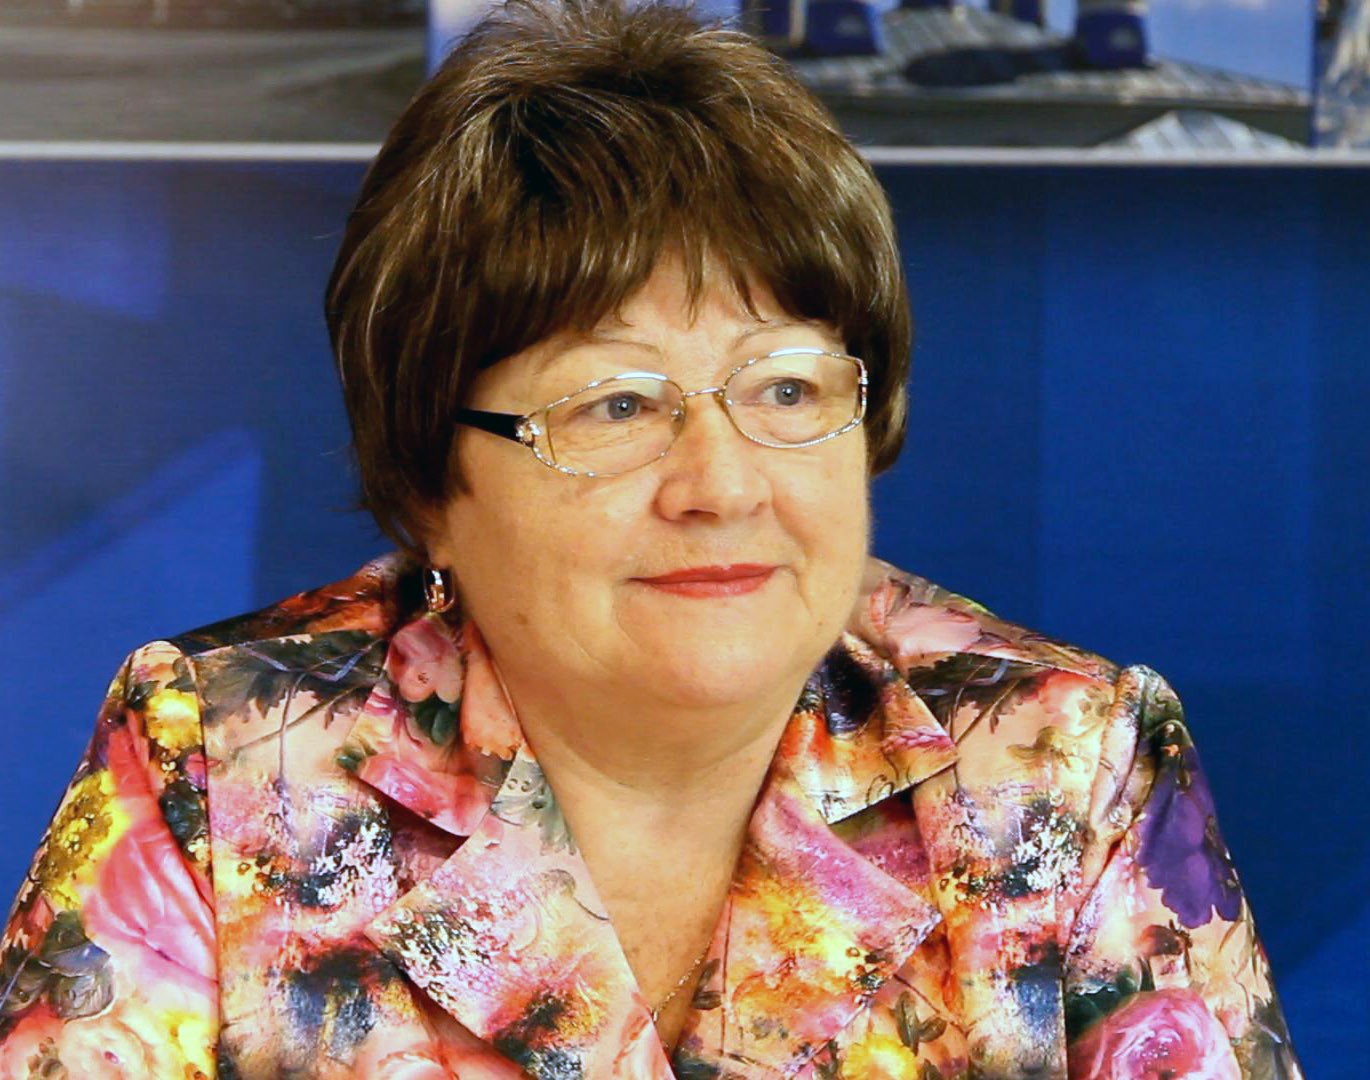 Елена Анатольевна Титова, директор средней школы № 2 г. Покров.